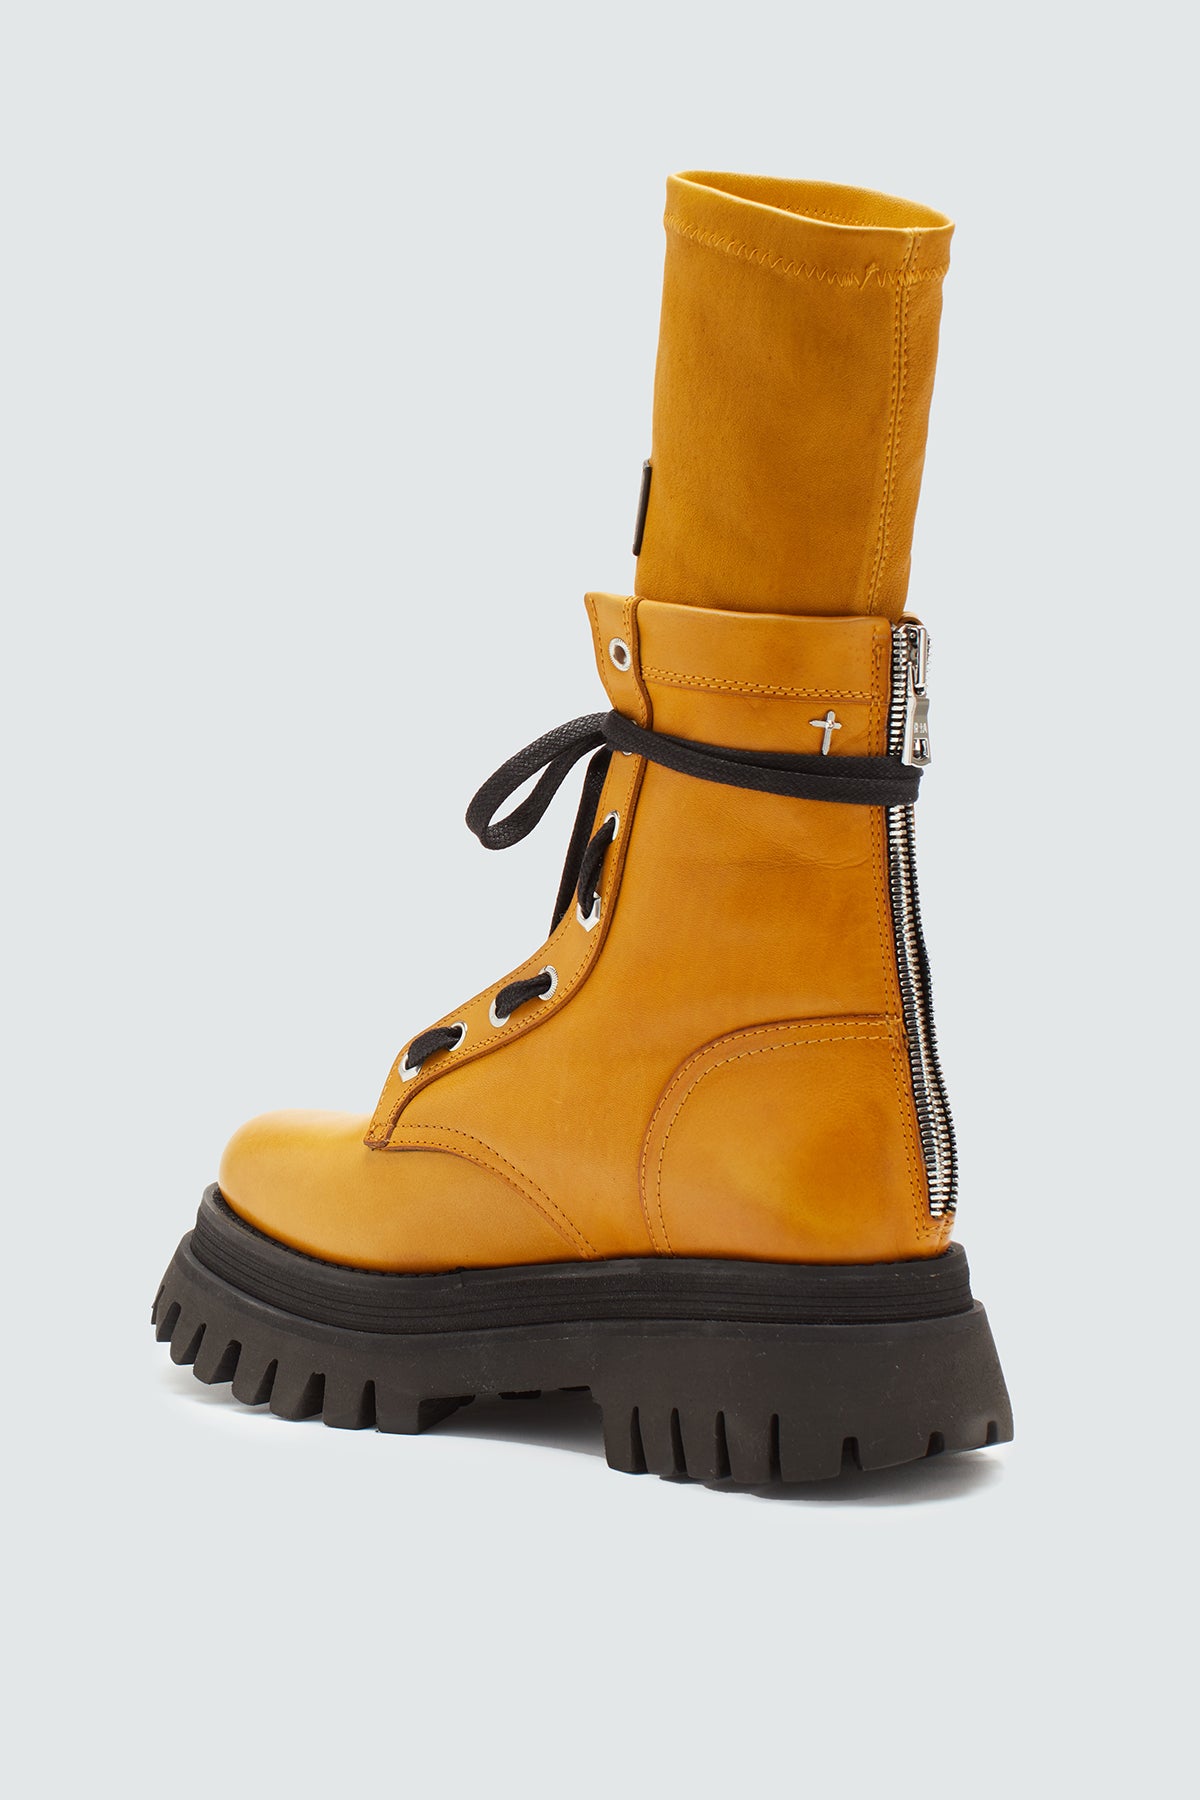 Women's zip-up leather combat boot in mustard yellow